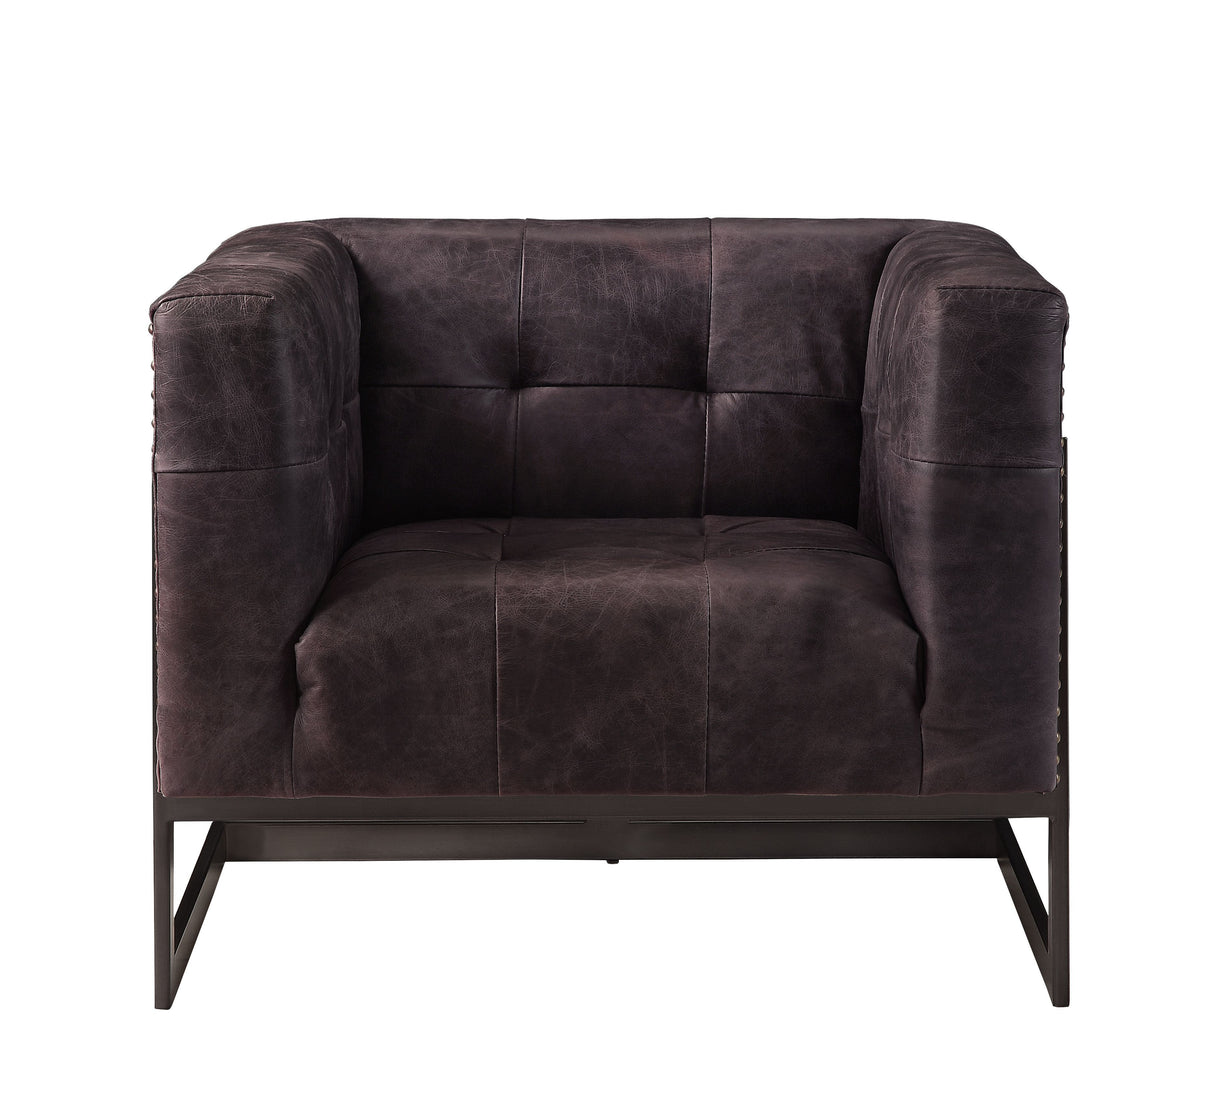 Sagat - Accent Chair - Antique Ebony Top Grain Leather & Rustic Oak